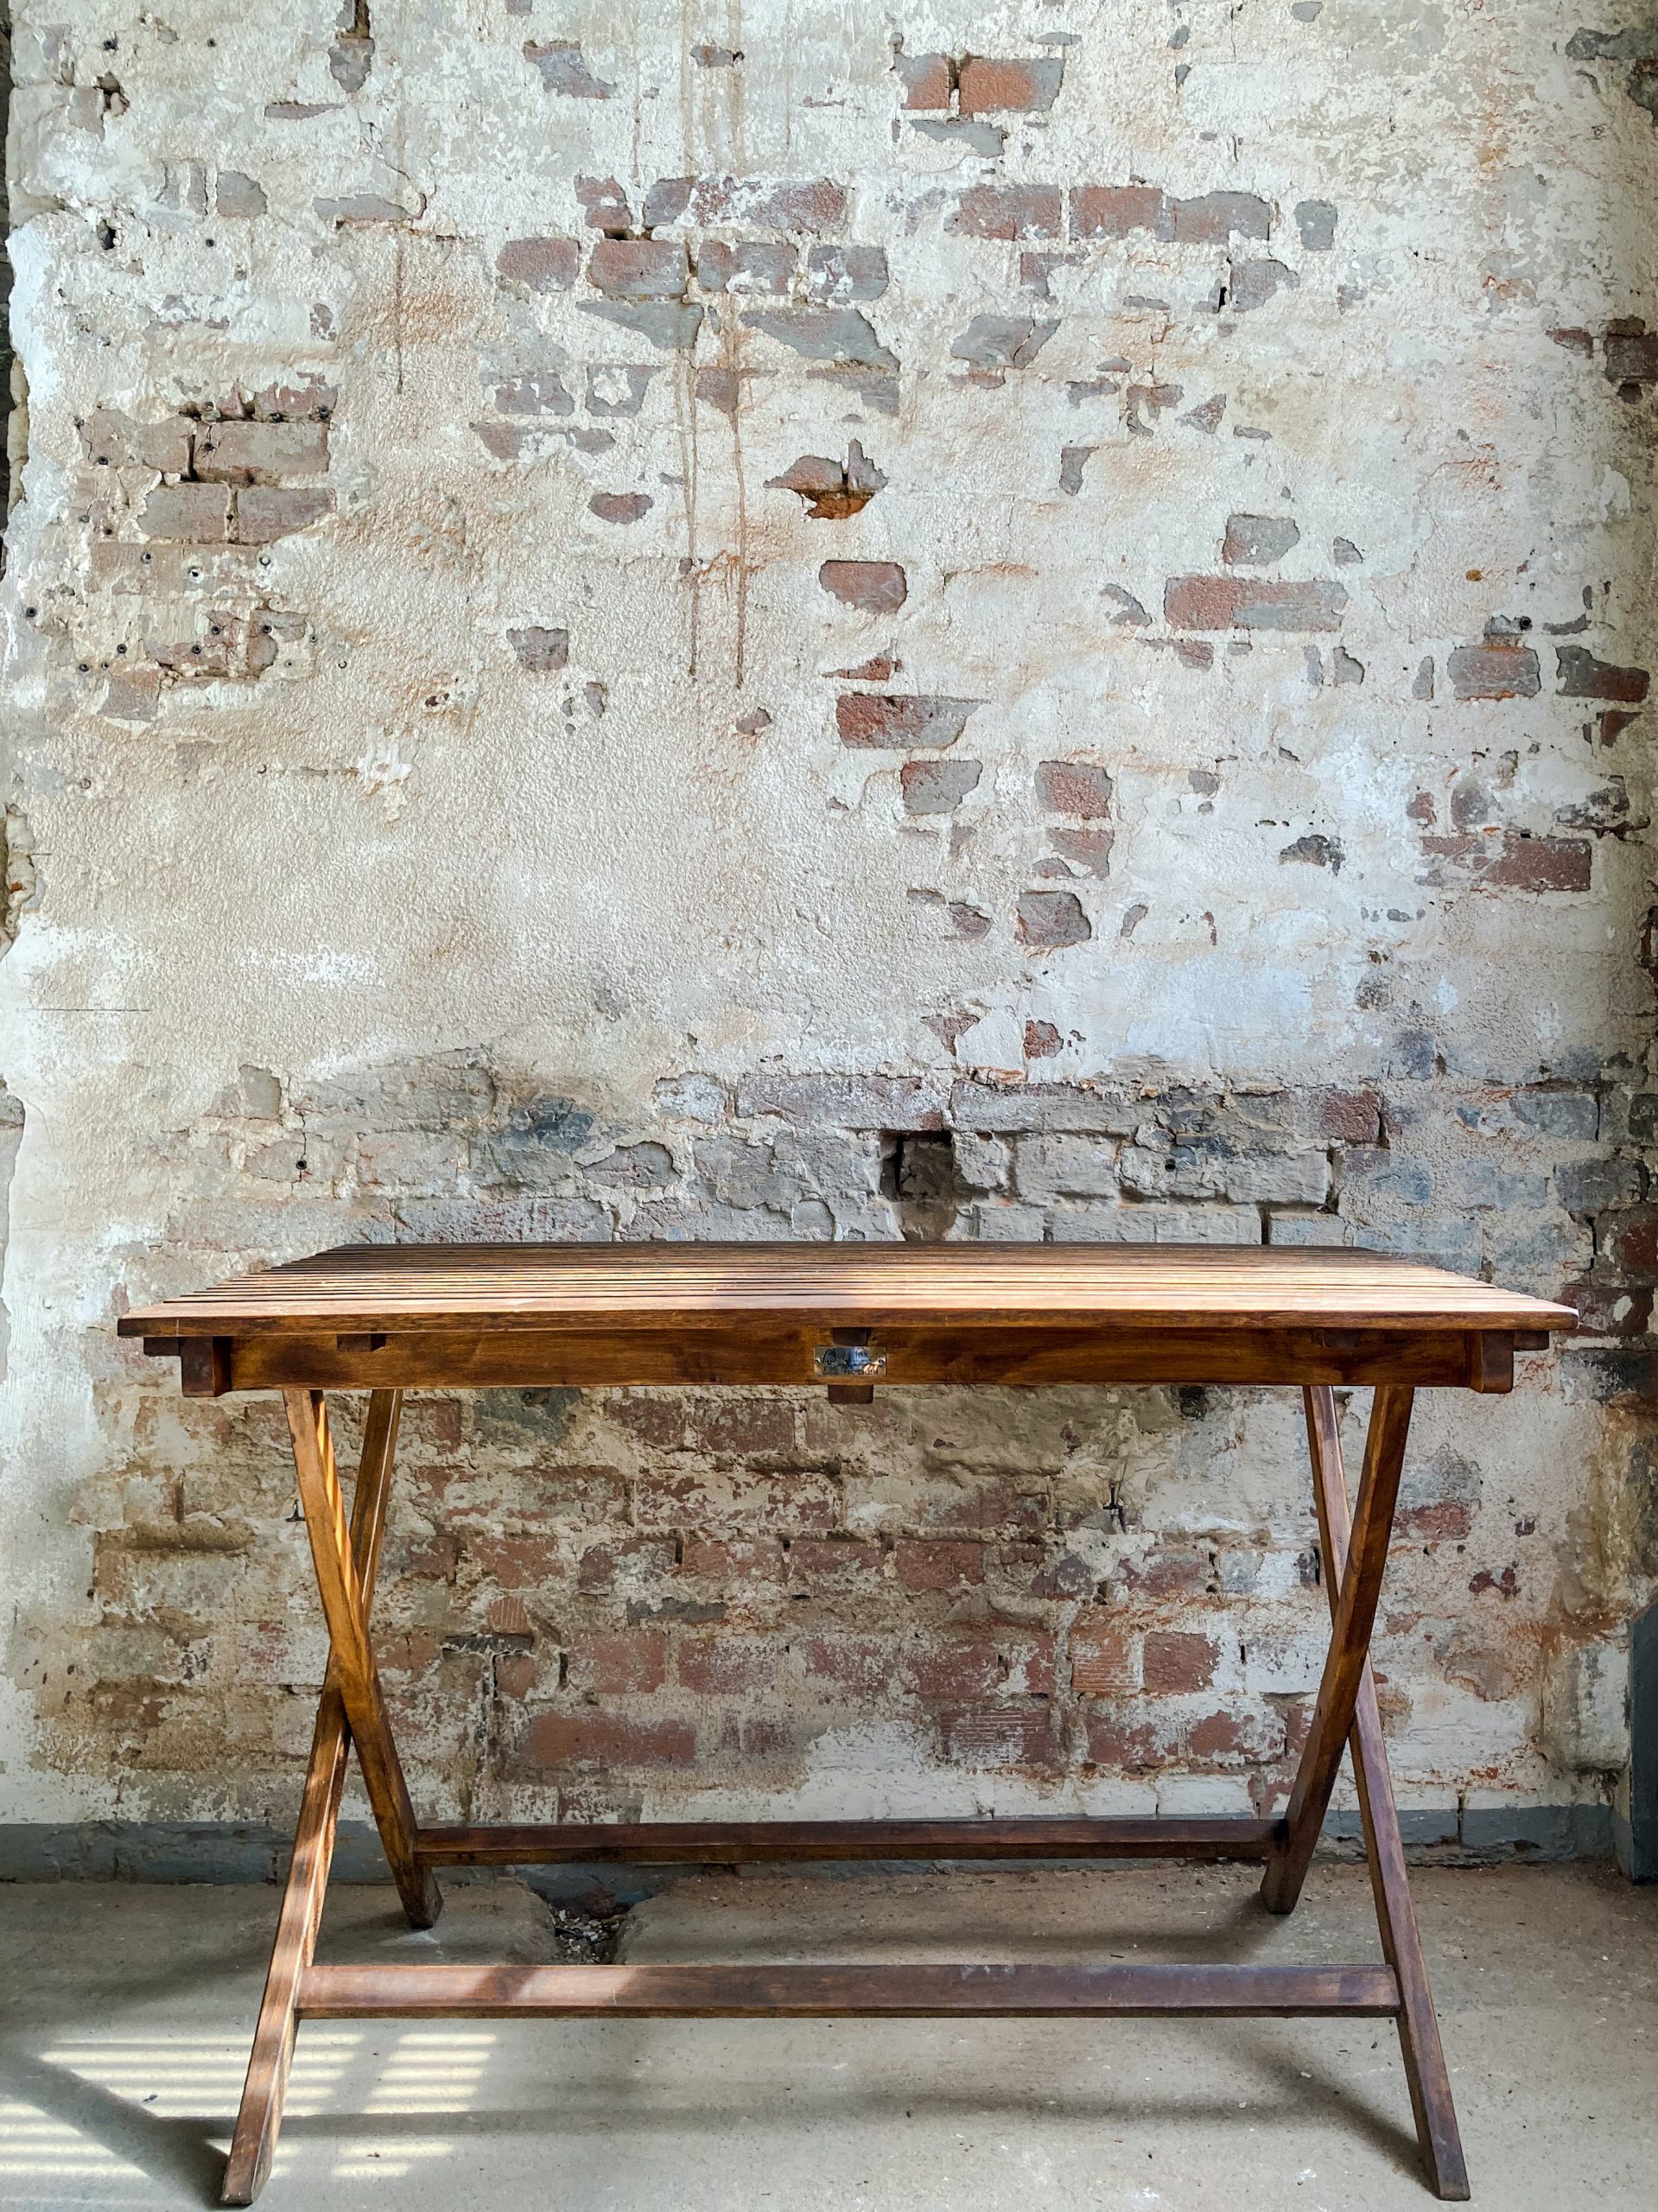 שולחן מעץ